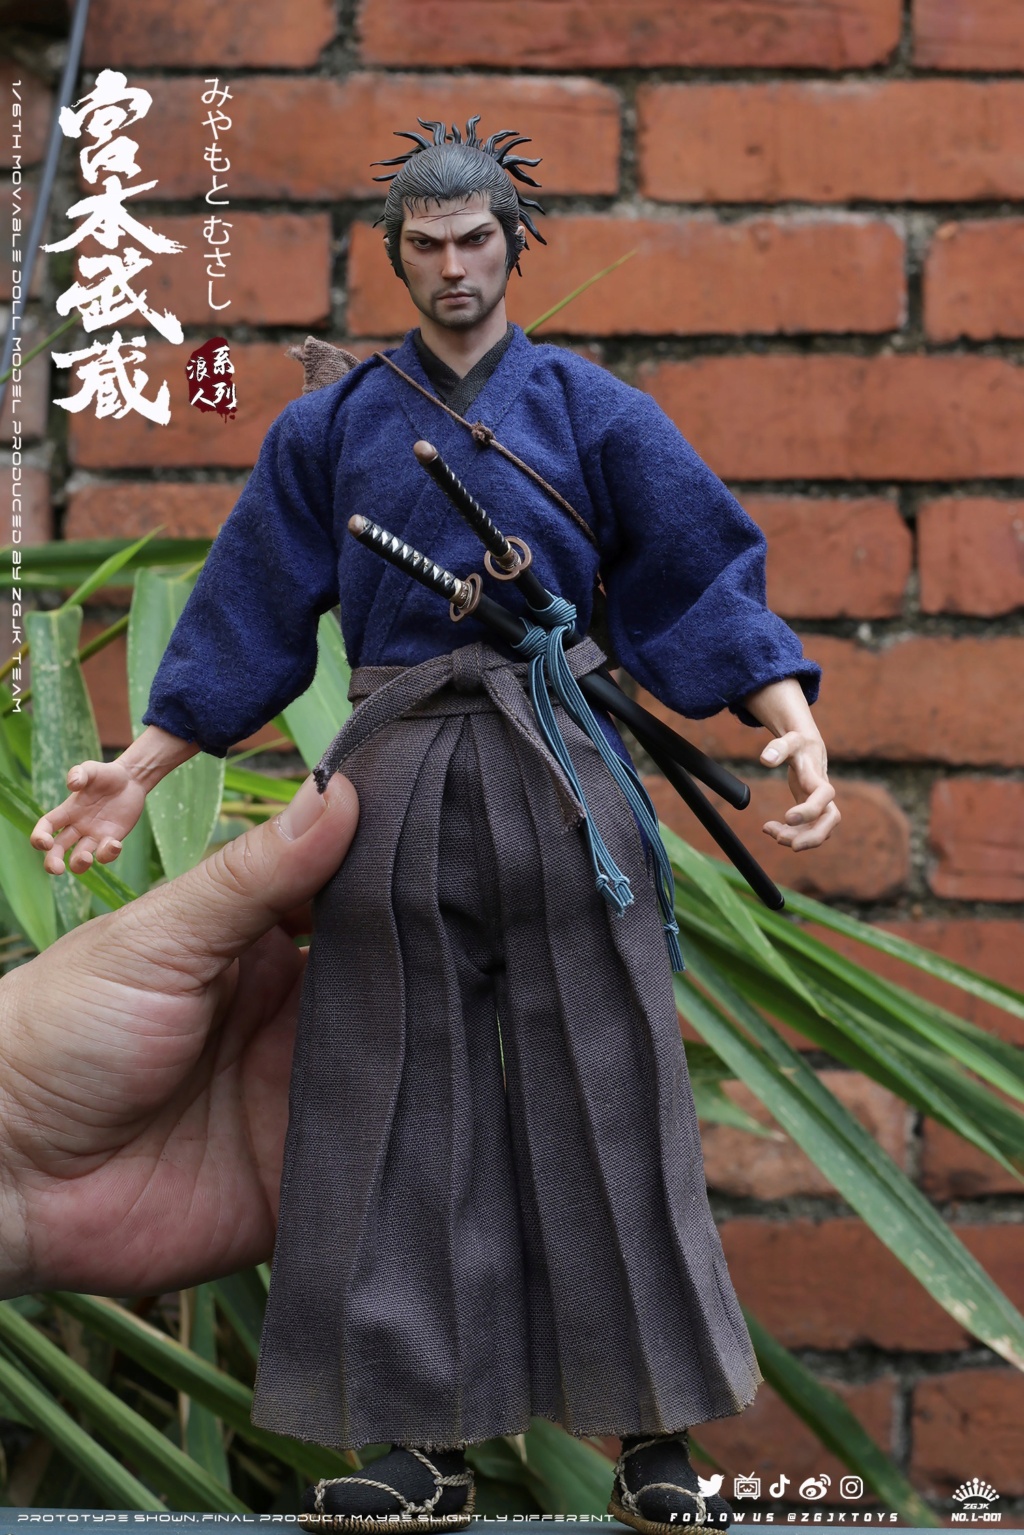 MyamotoMusashi - MEW PRODUCT: ZGJKTOYS: Ronin Series 1/6 Miyamoto Musashi Action Figure ------ Updated Official Figure 8678eb10